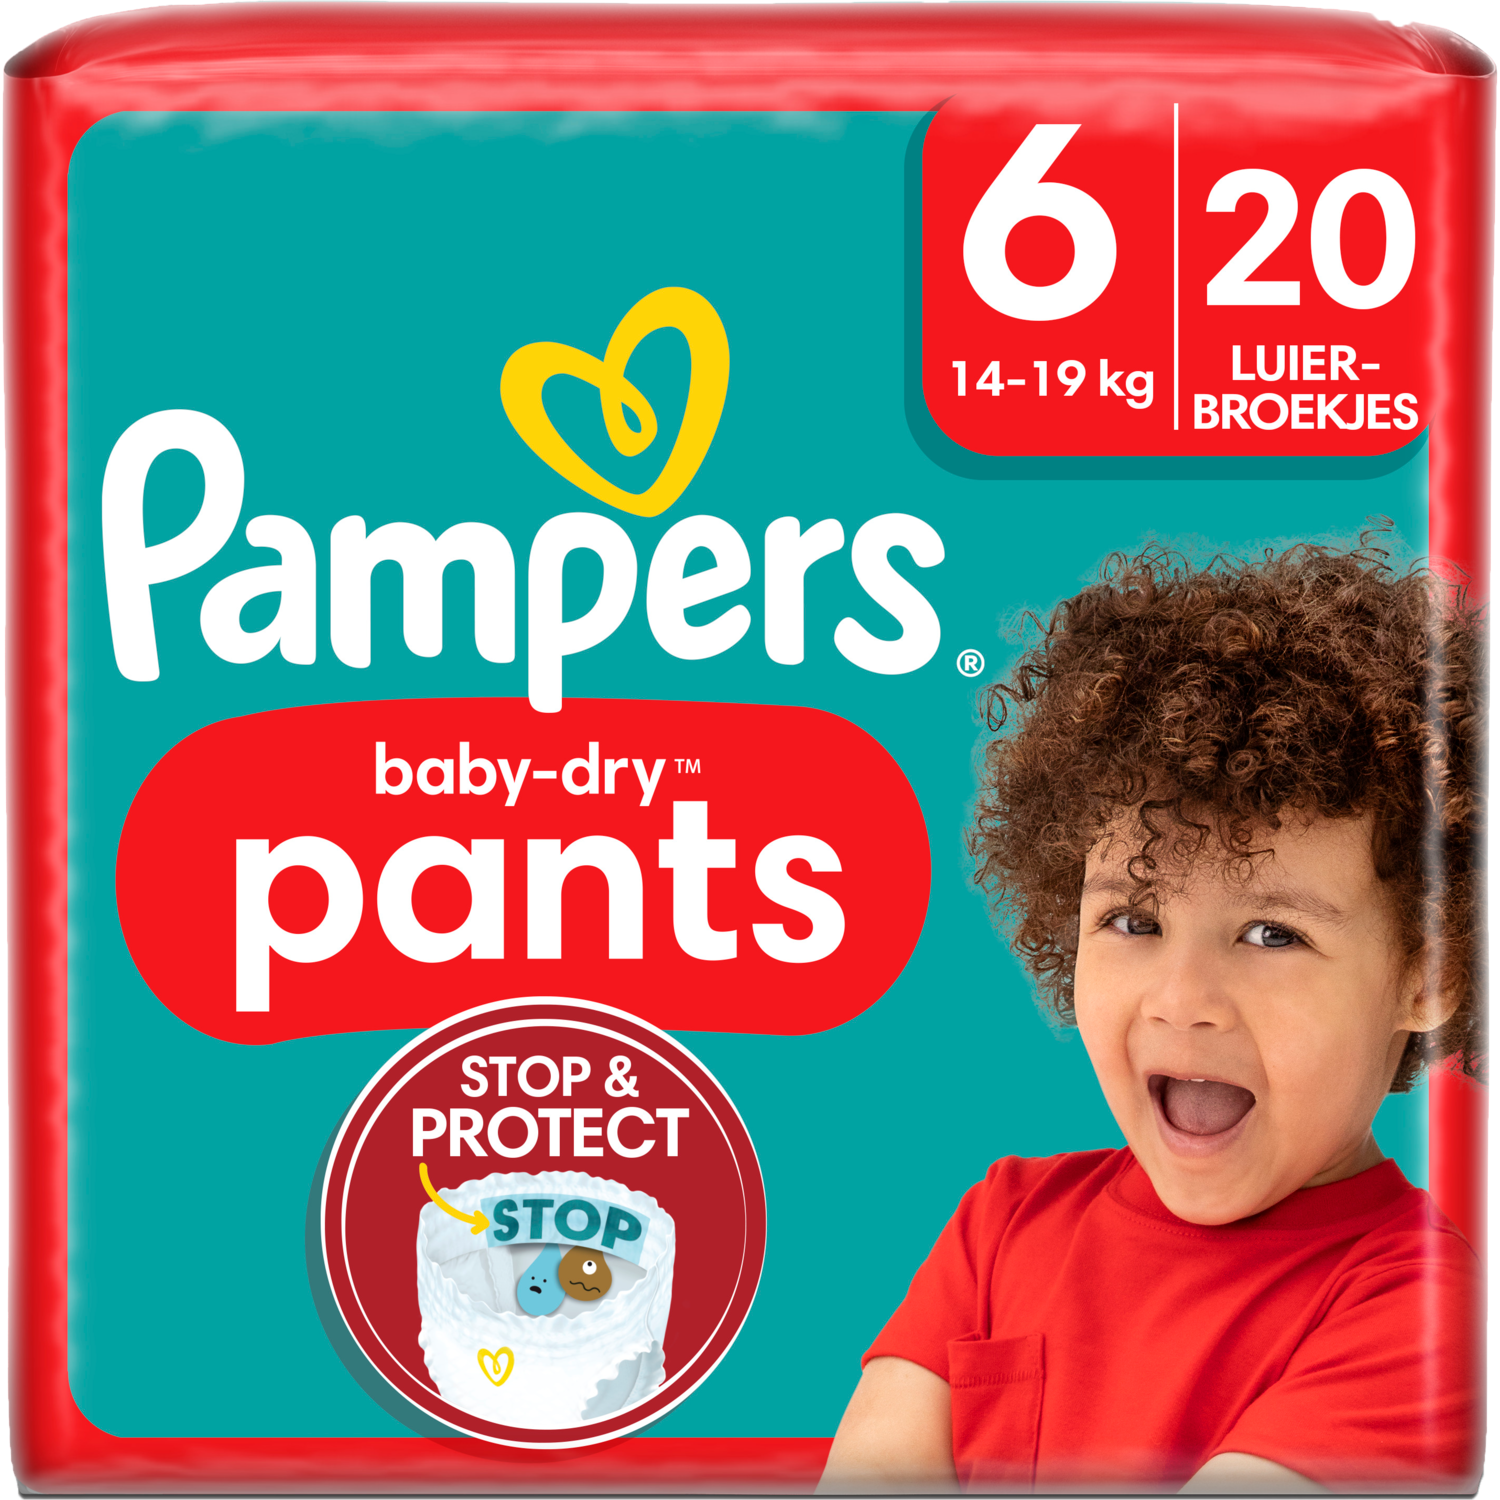 Aanbieding: Pampers Baby-dry pants 6! DekaMarkt